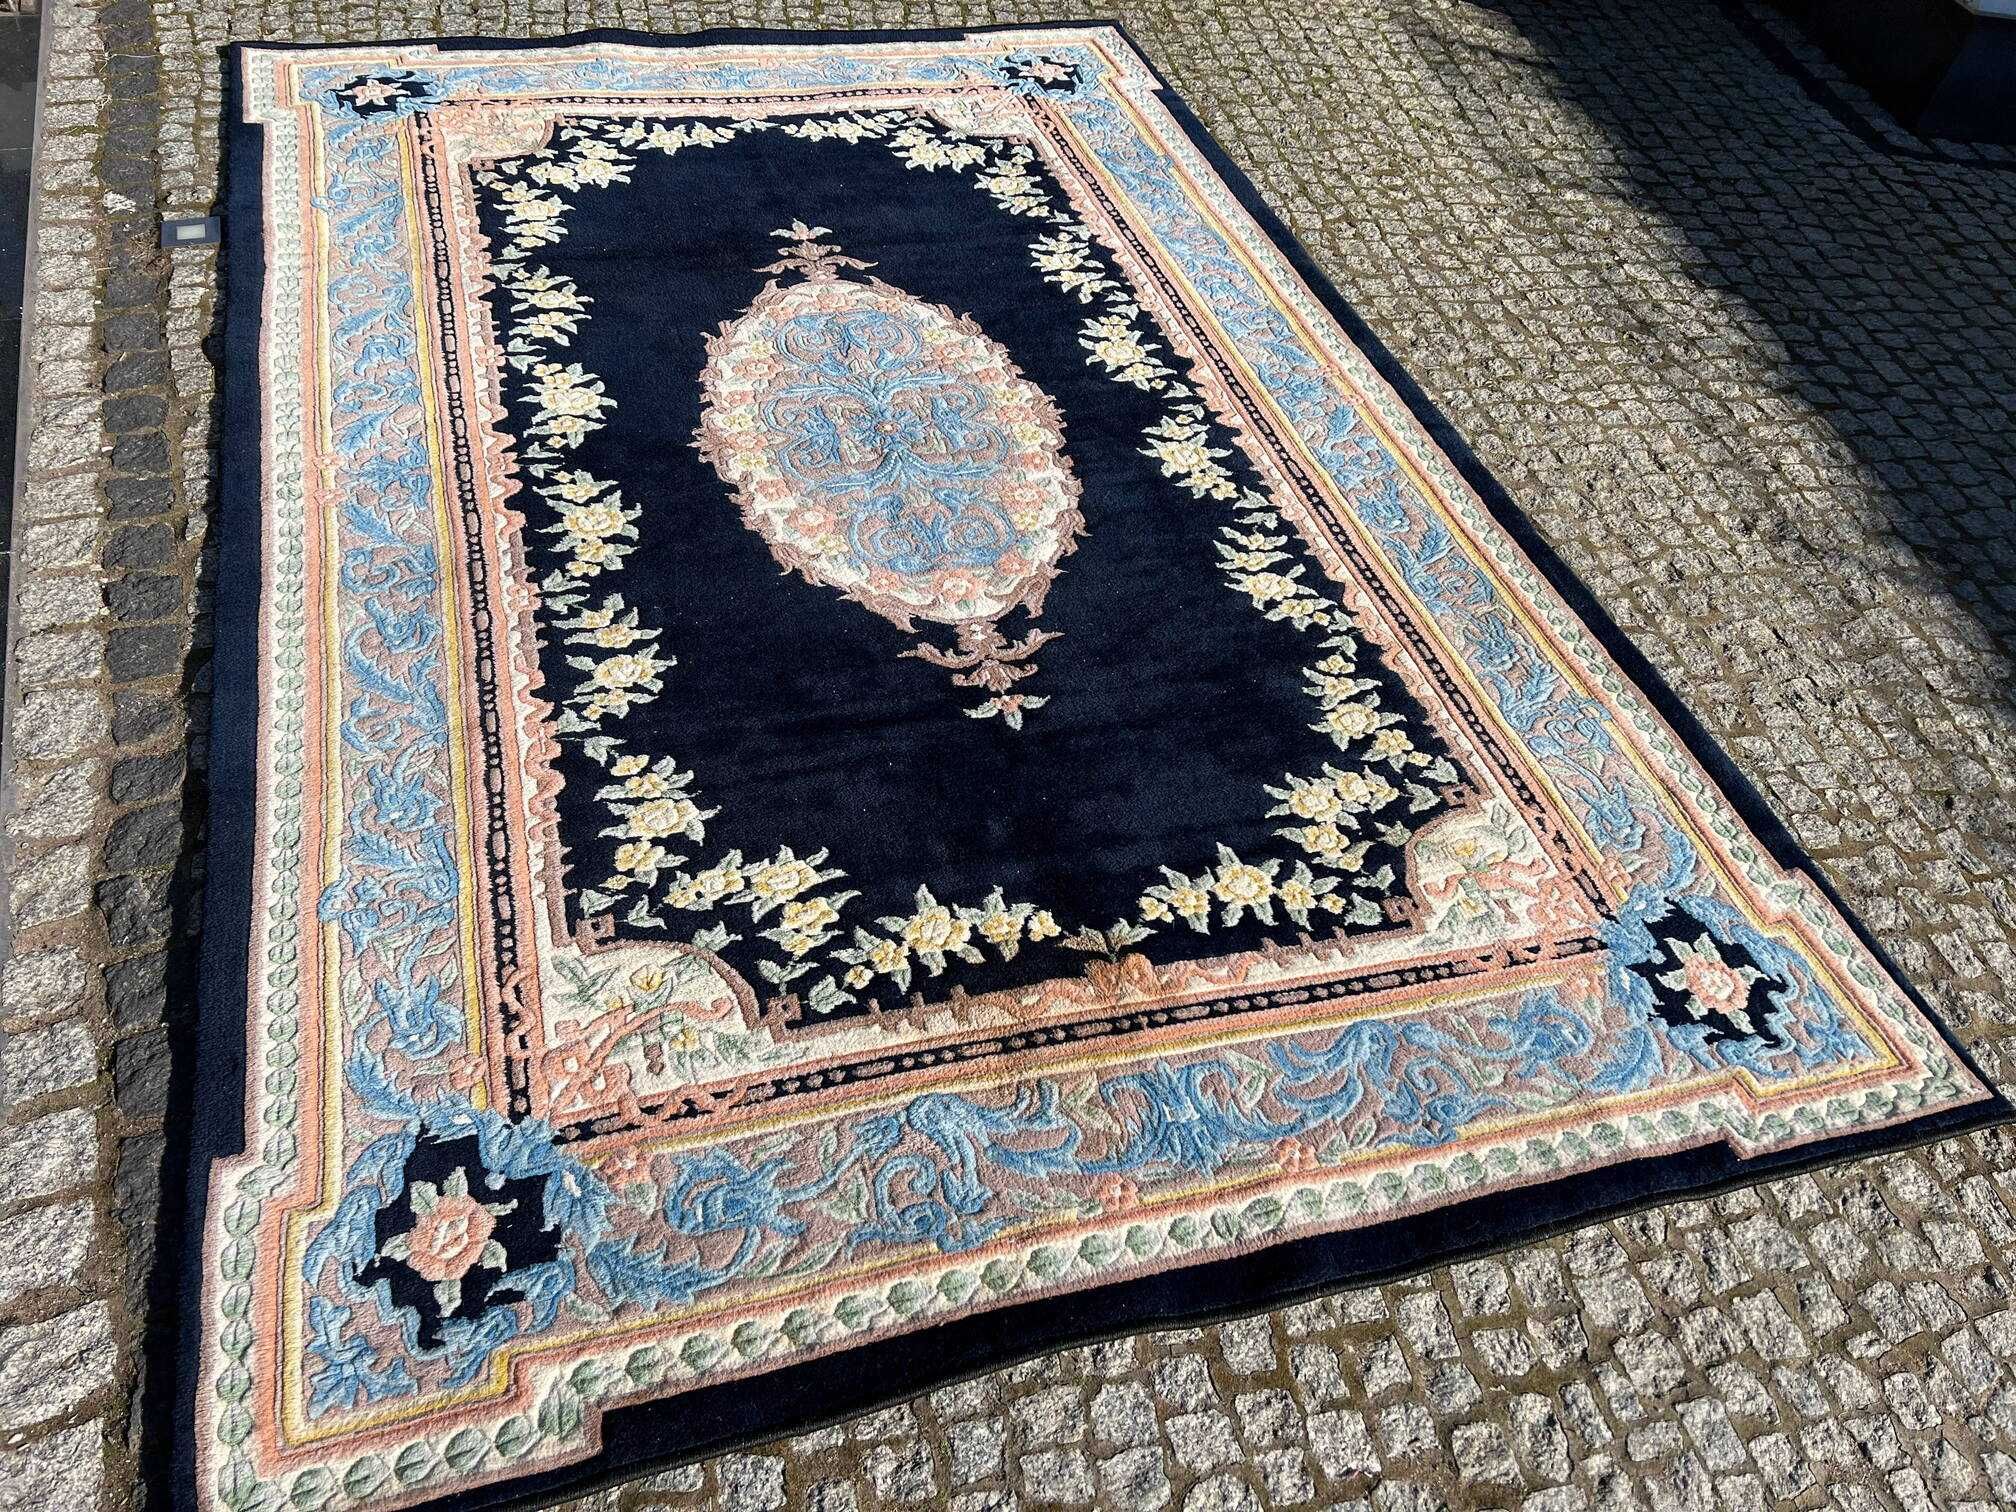 Kaszmirowy dywan ręczny Indo Aubusson 300x200 galeria 14 tys